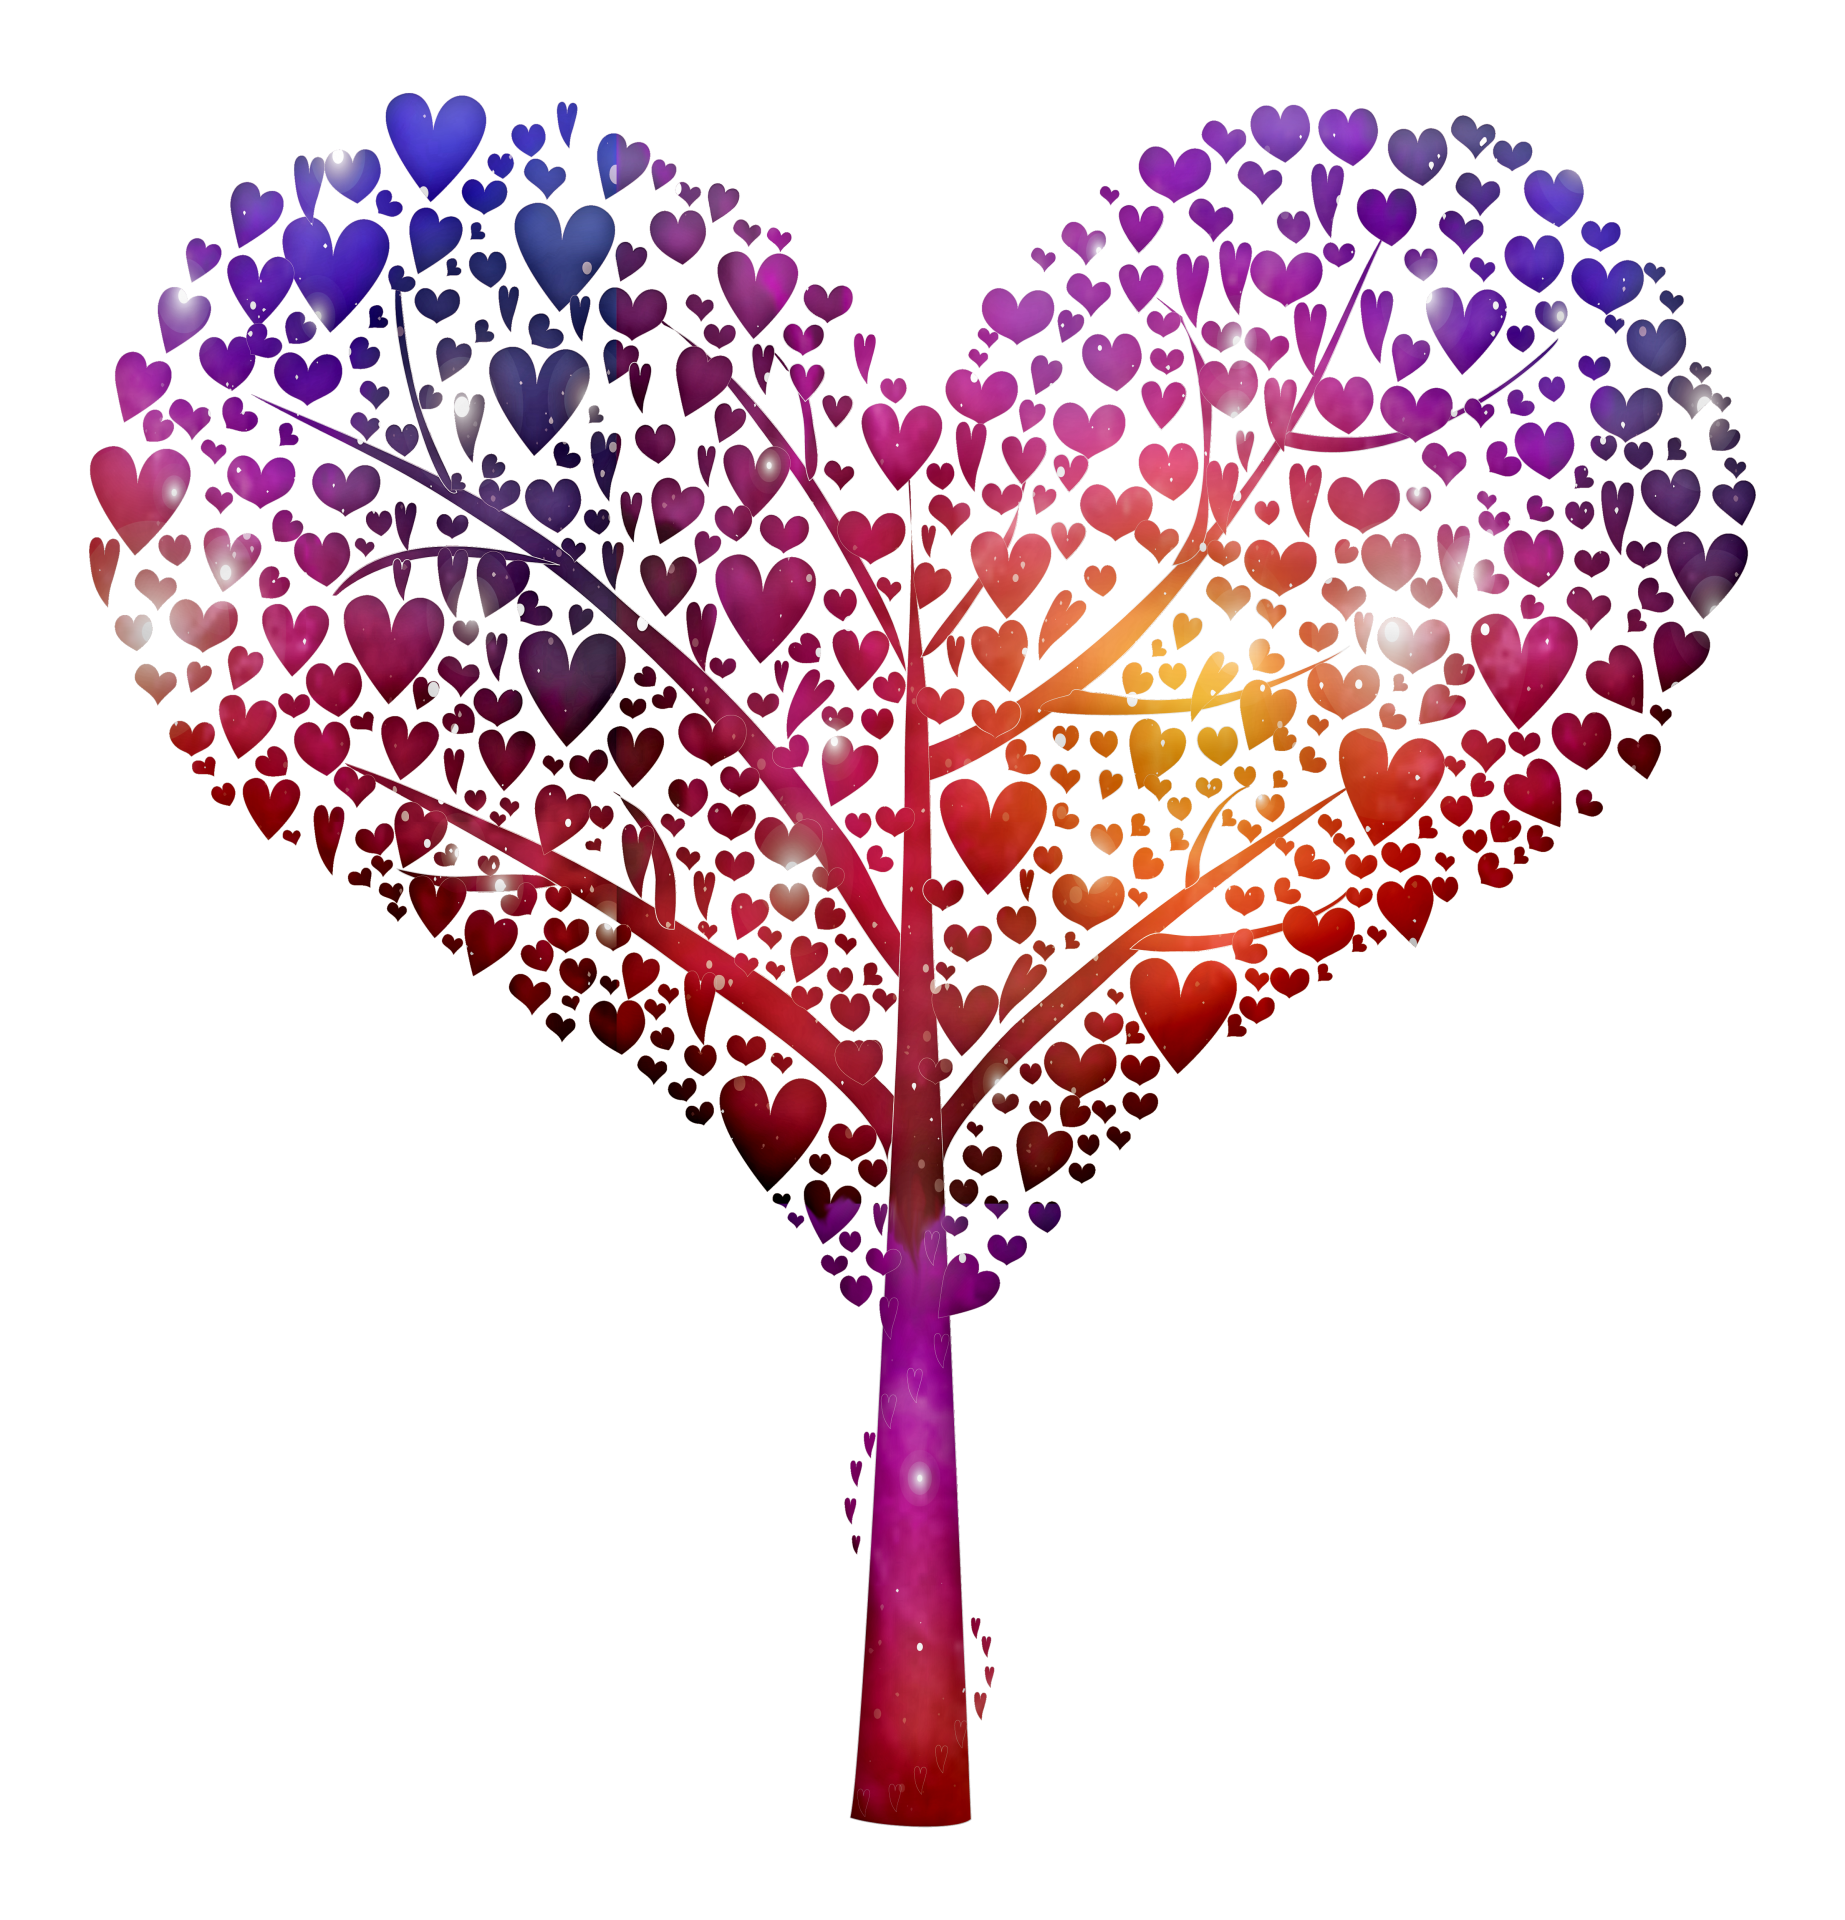 Heart Shaped Galaxy Tree